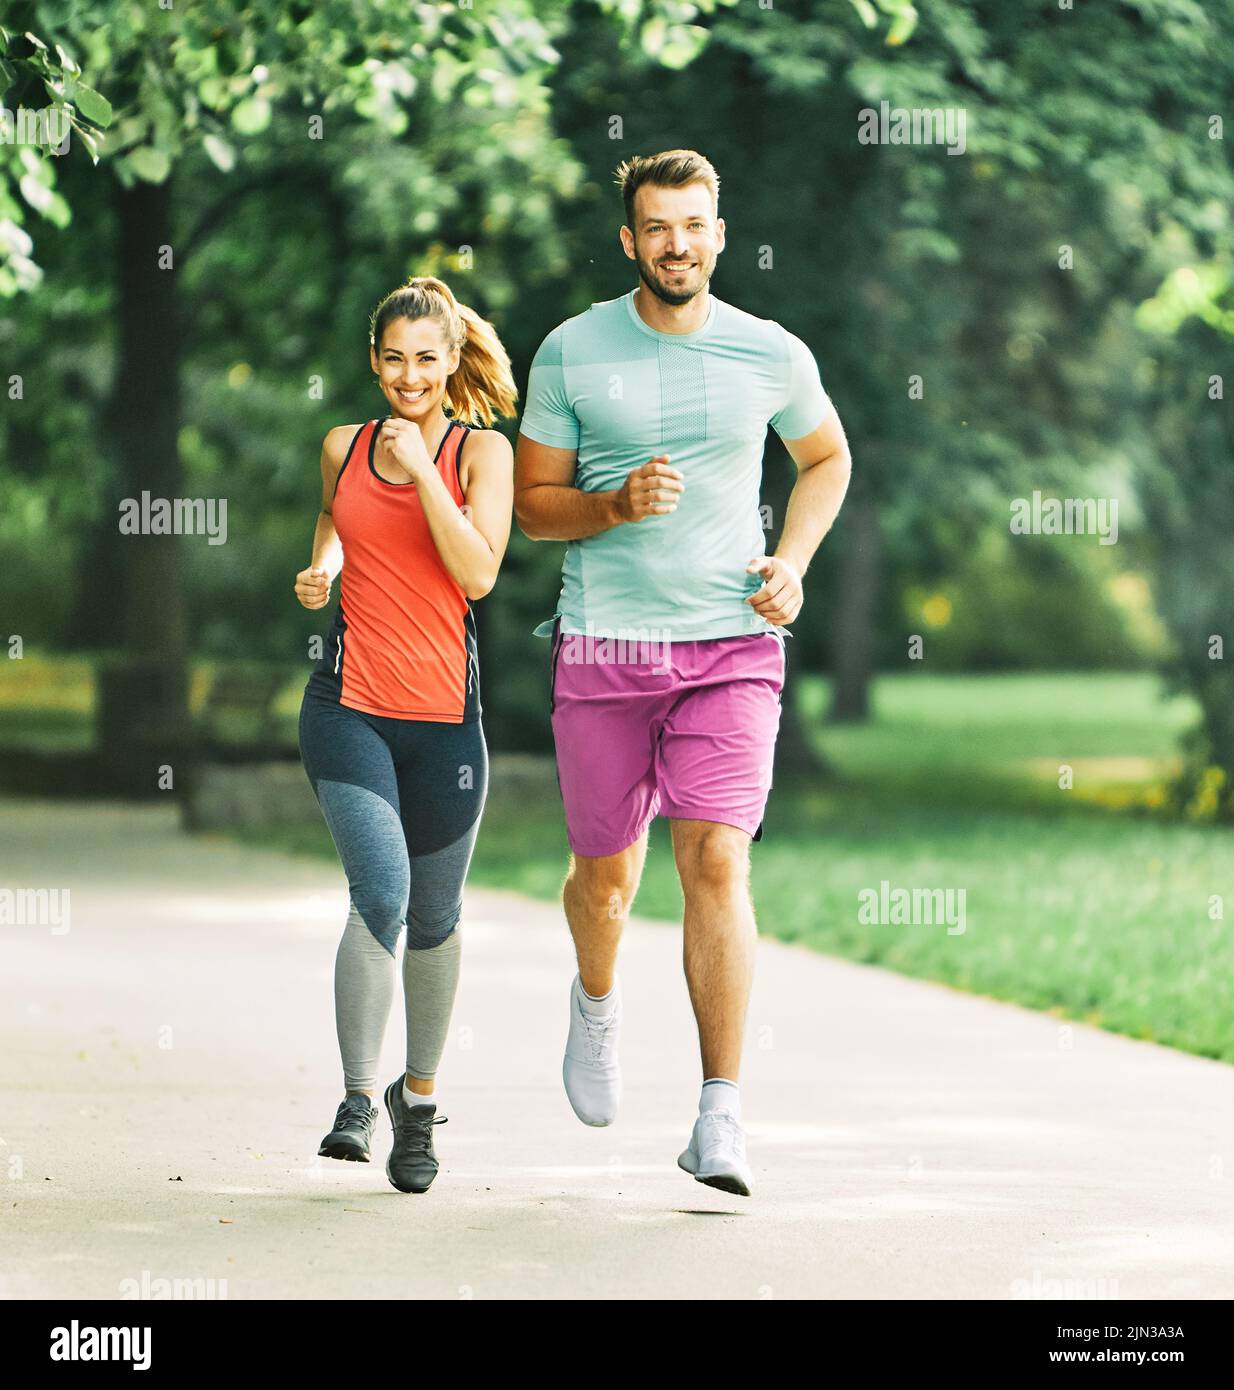 gimnasio mujer parque ejercicio estilo de vida al aire libre deporte pareja saludable naturaleza activo joven en forma de entrenamiento atleta hombre Foto de stock